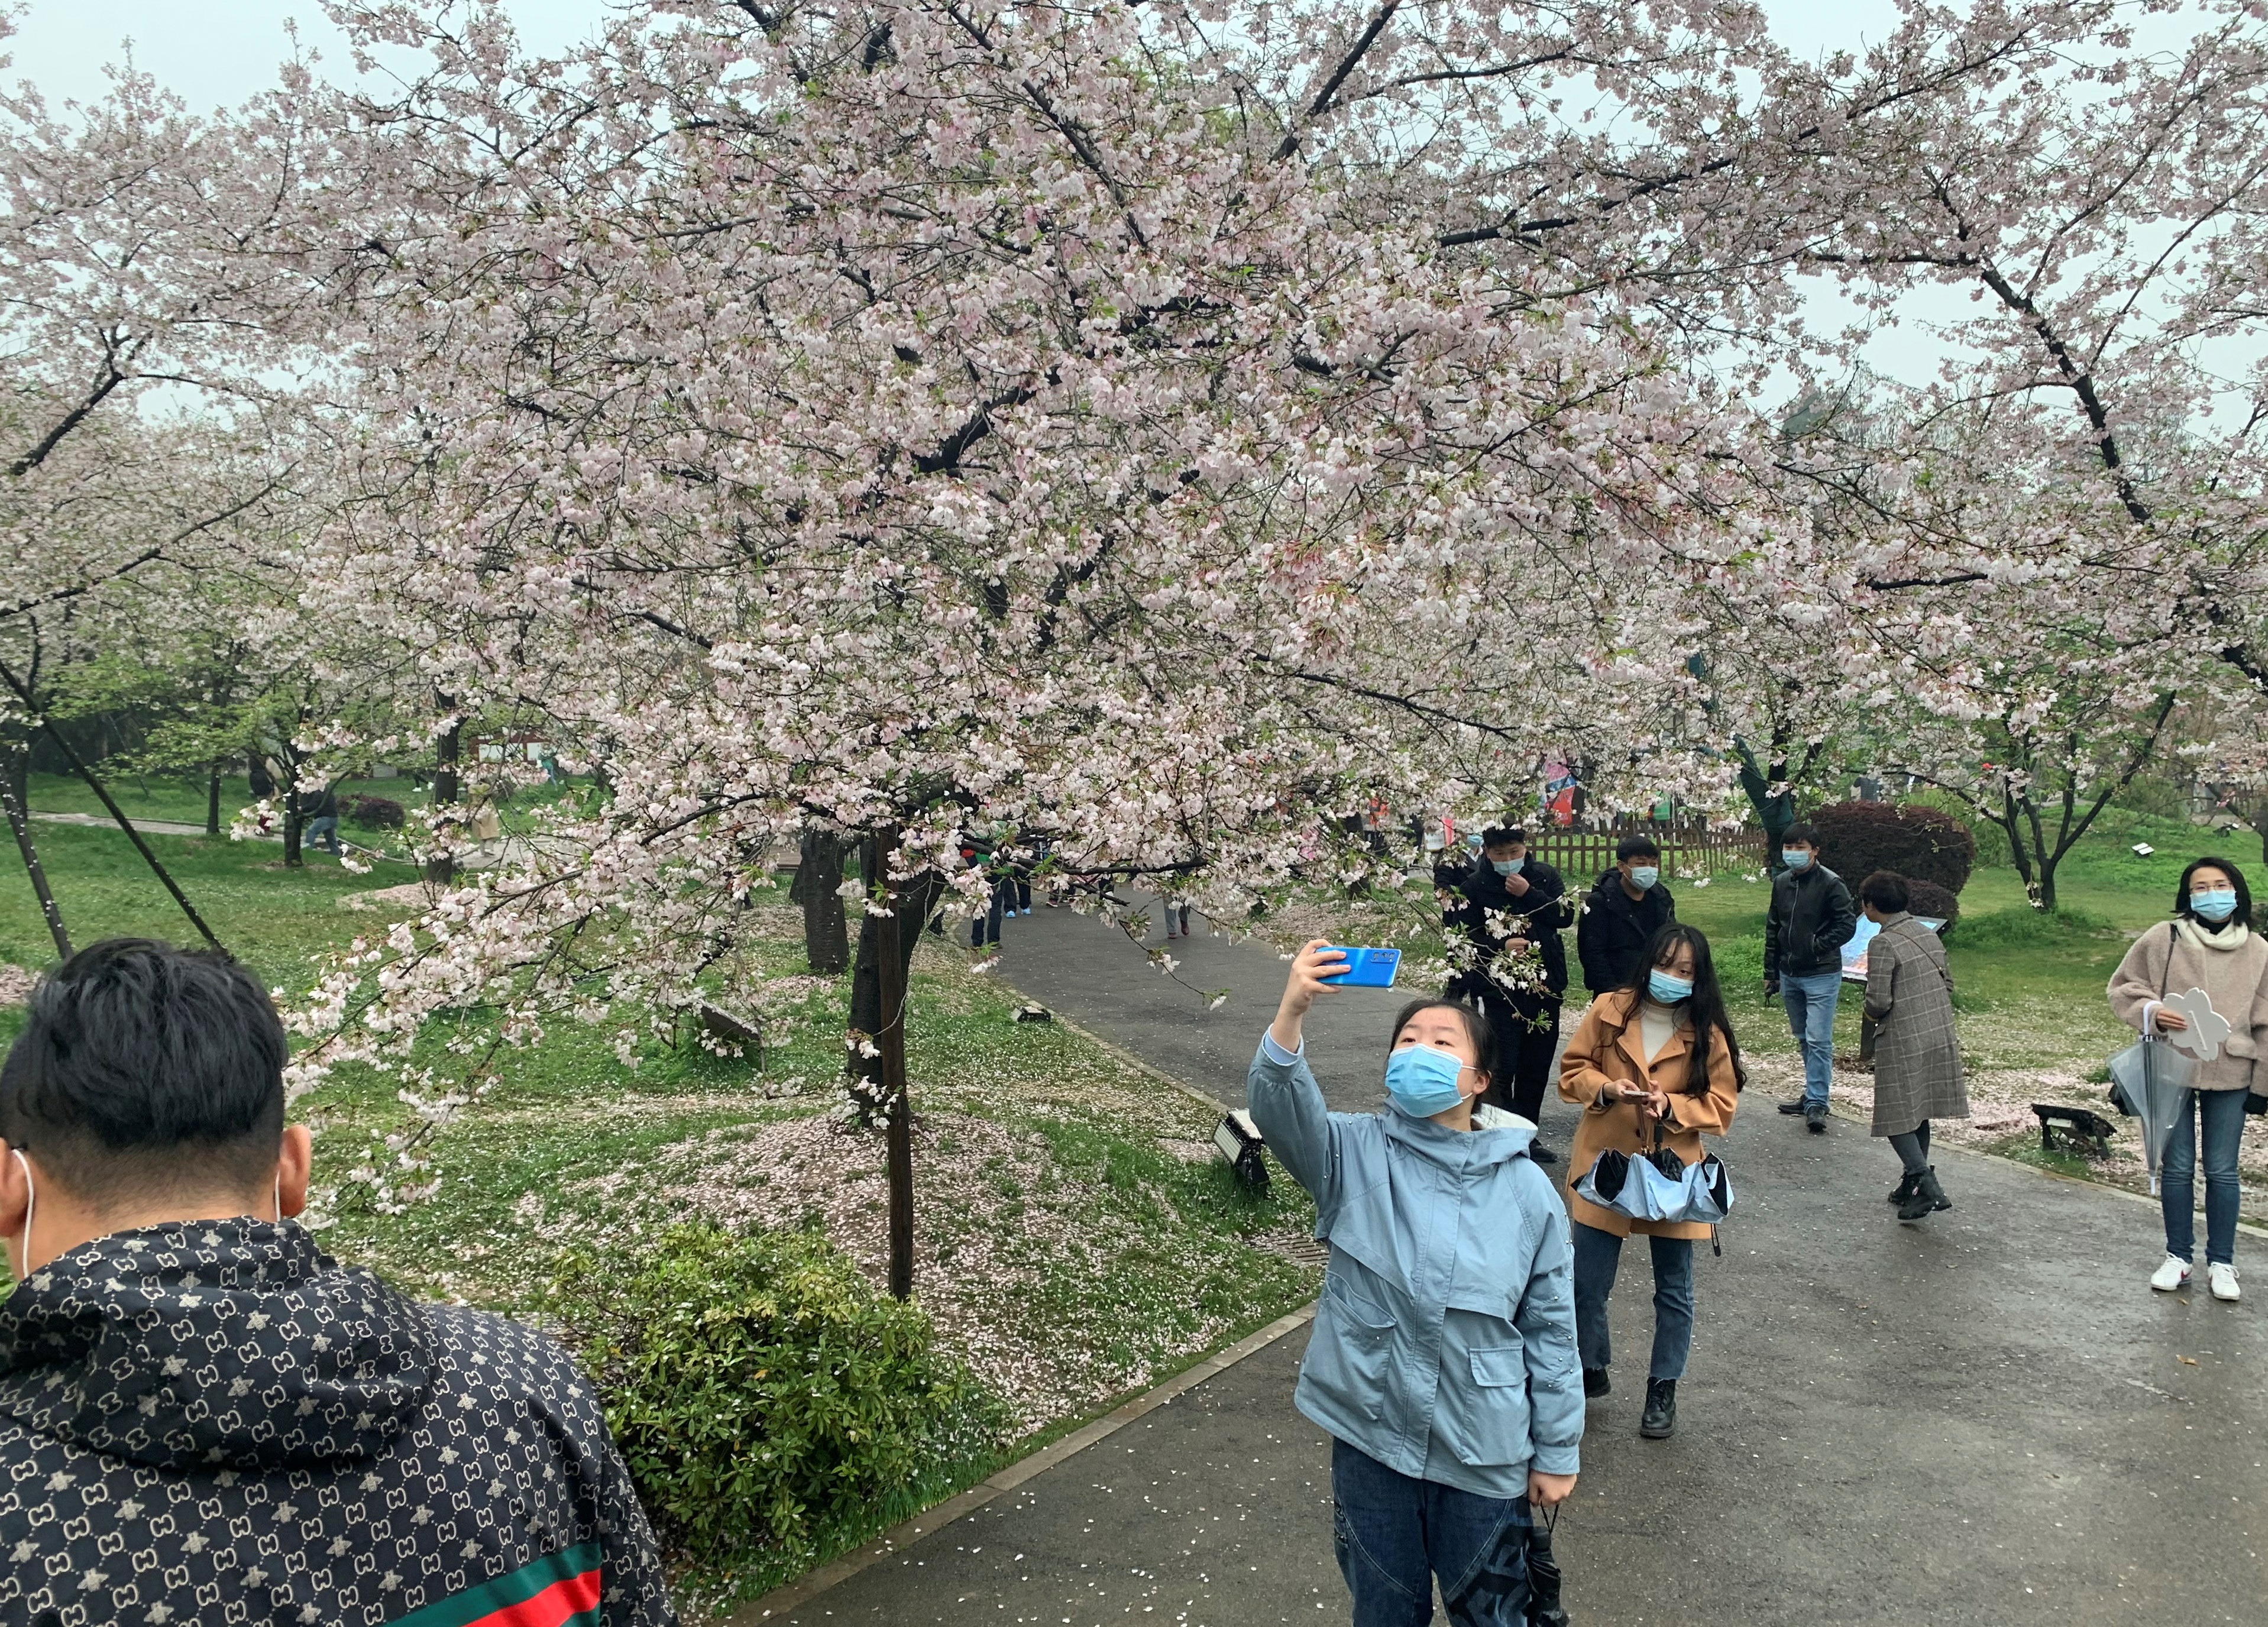 Un año después, Wuhan recupera su festival de los cerezos en flor